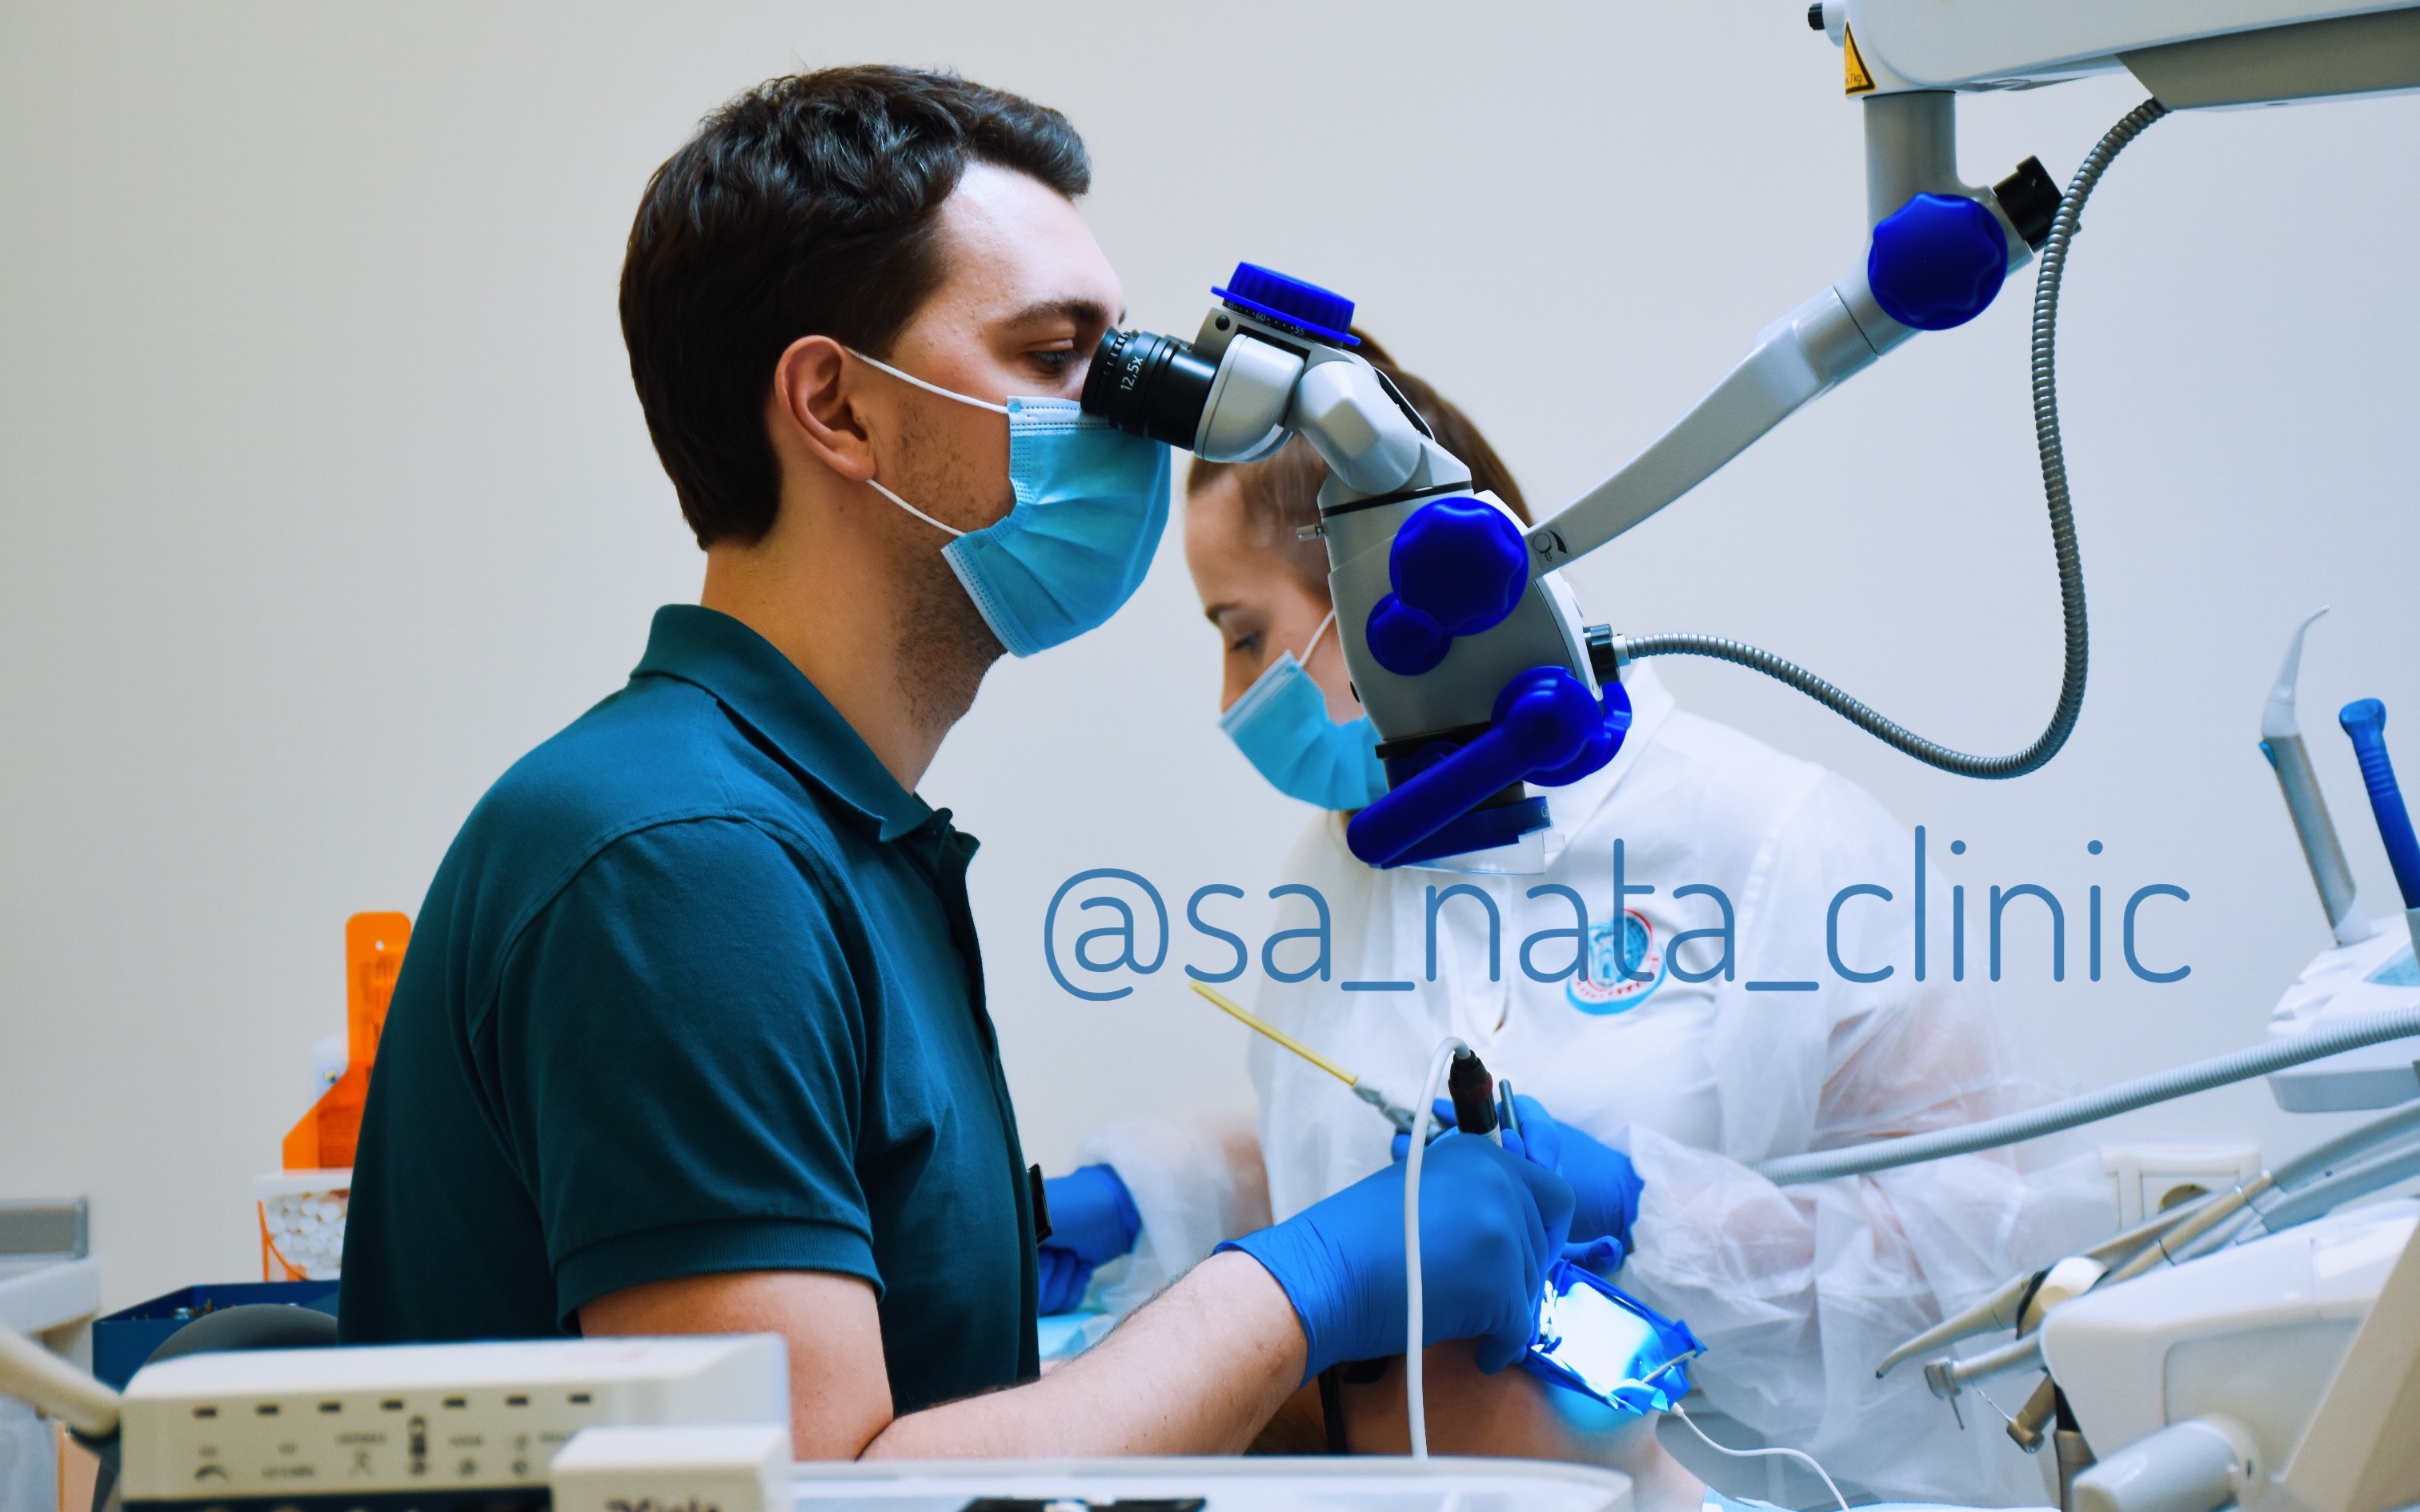 СА-НАТА — вакансия в Медсестра, ассистент стоматолога: фото 11